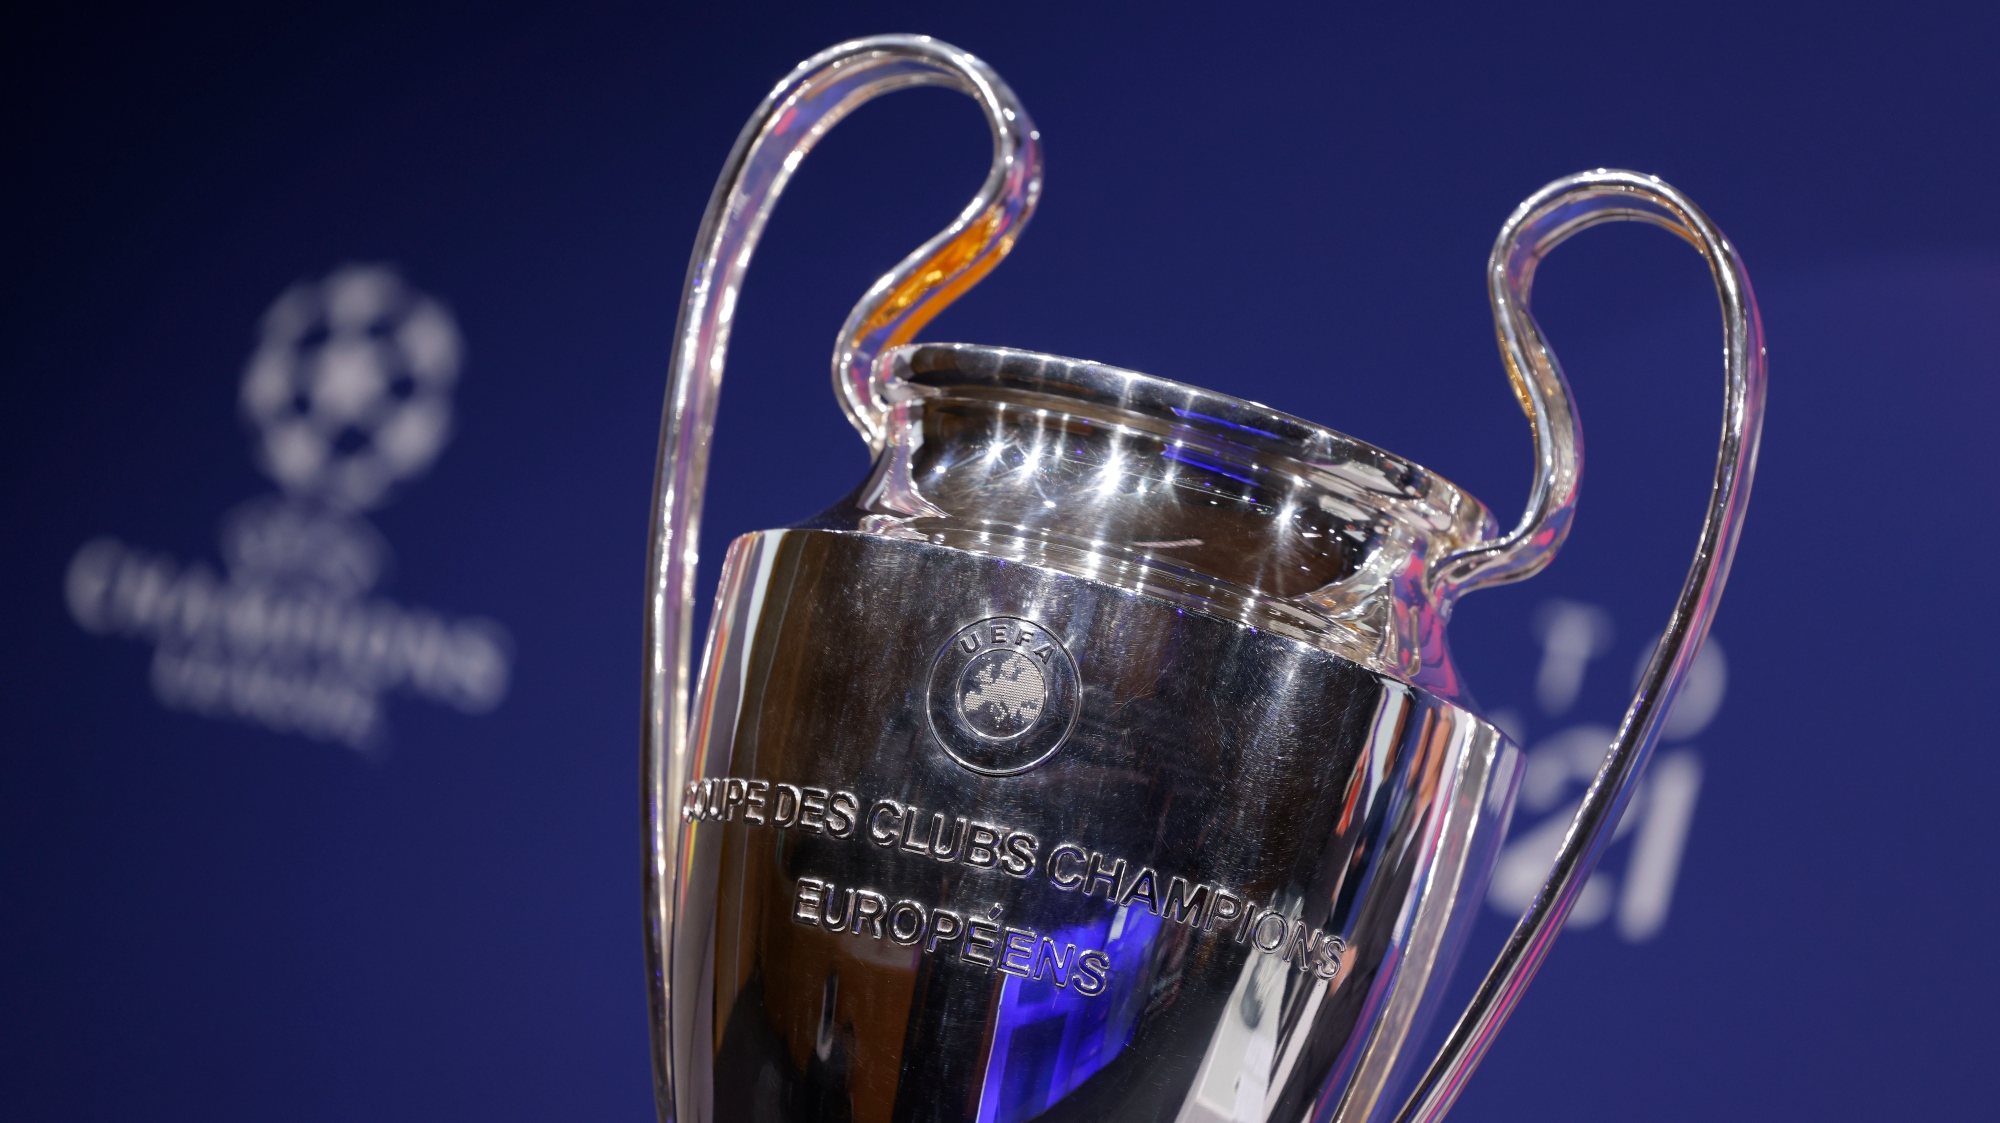 Classificação Liga dos Campeões (Champions League) 2023/2024